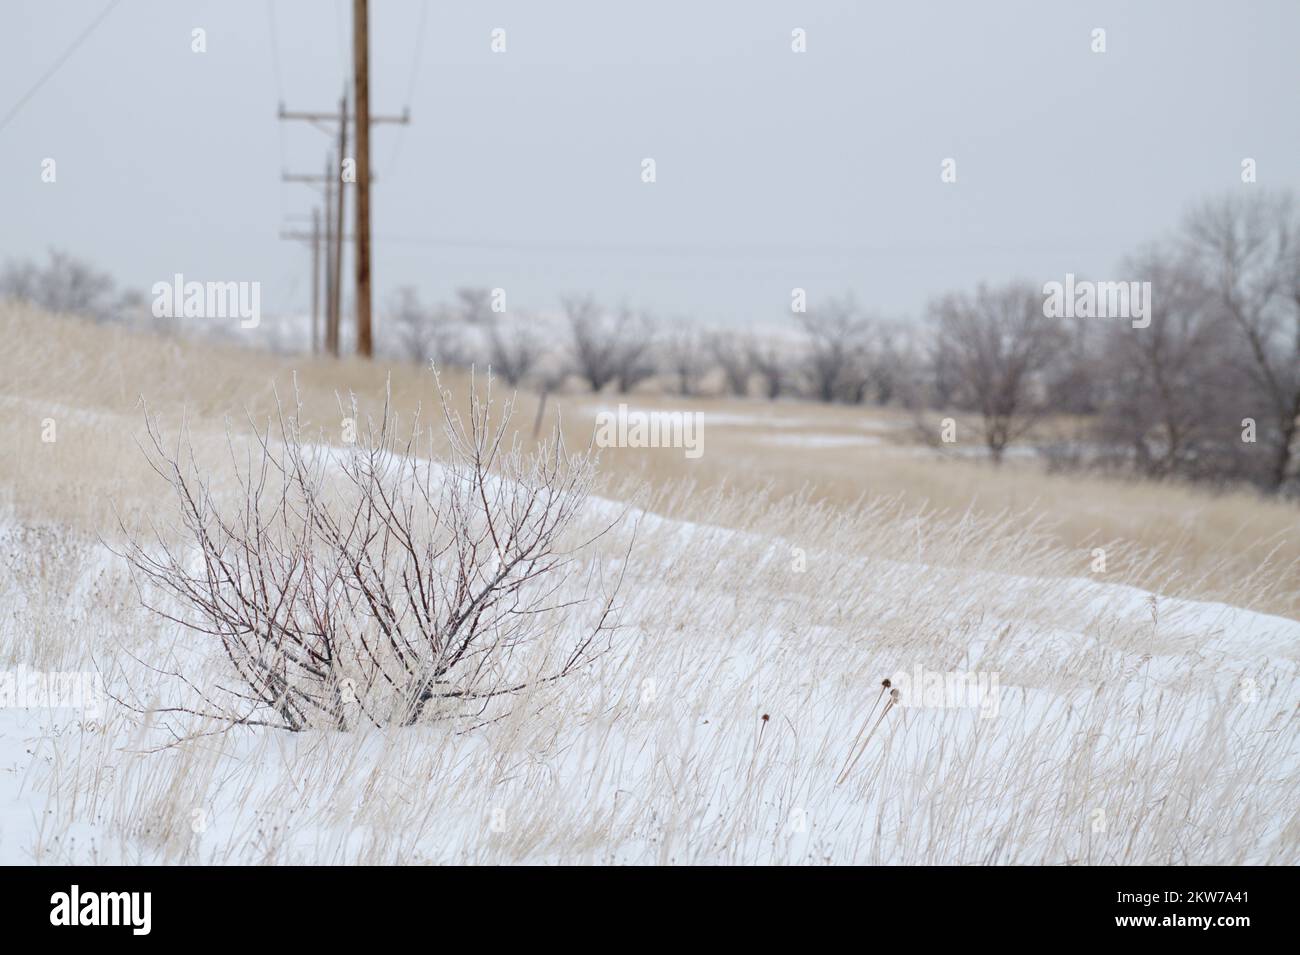 Ein kleiner Busch mitten im Winter in North Dakota. Dieses Bild zeigt die Anstrengungen, die das Leben unternimmt, um Widrigkeiten zu überwinden und sich daran anzupassen. Stockfoto